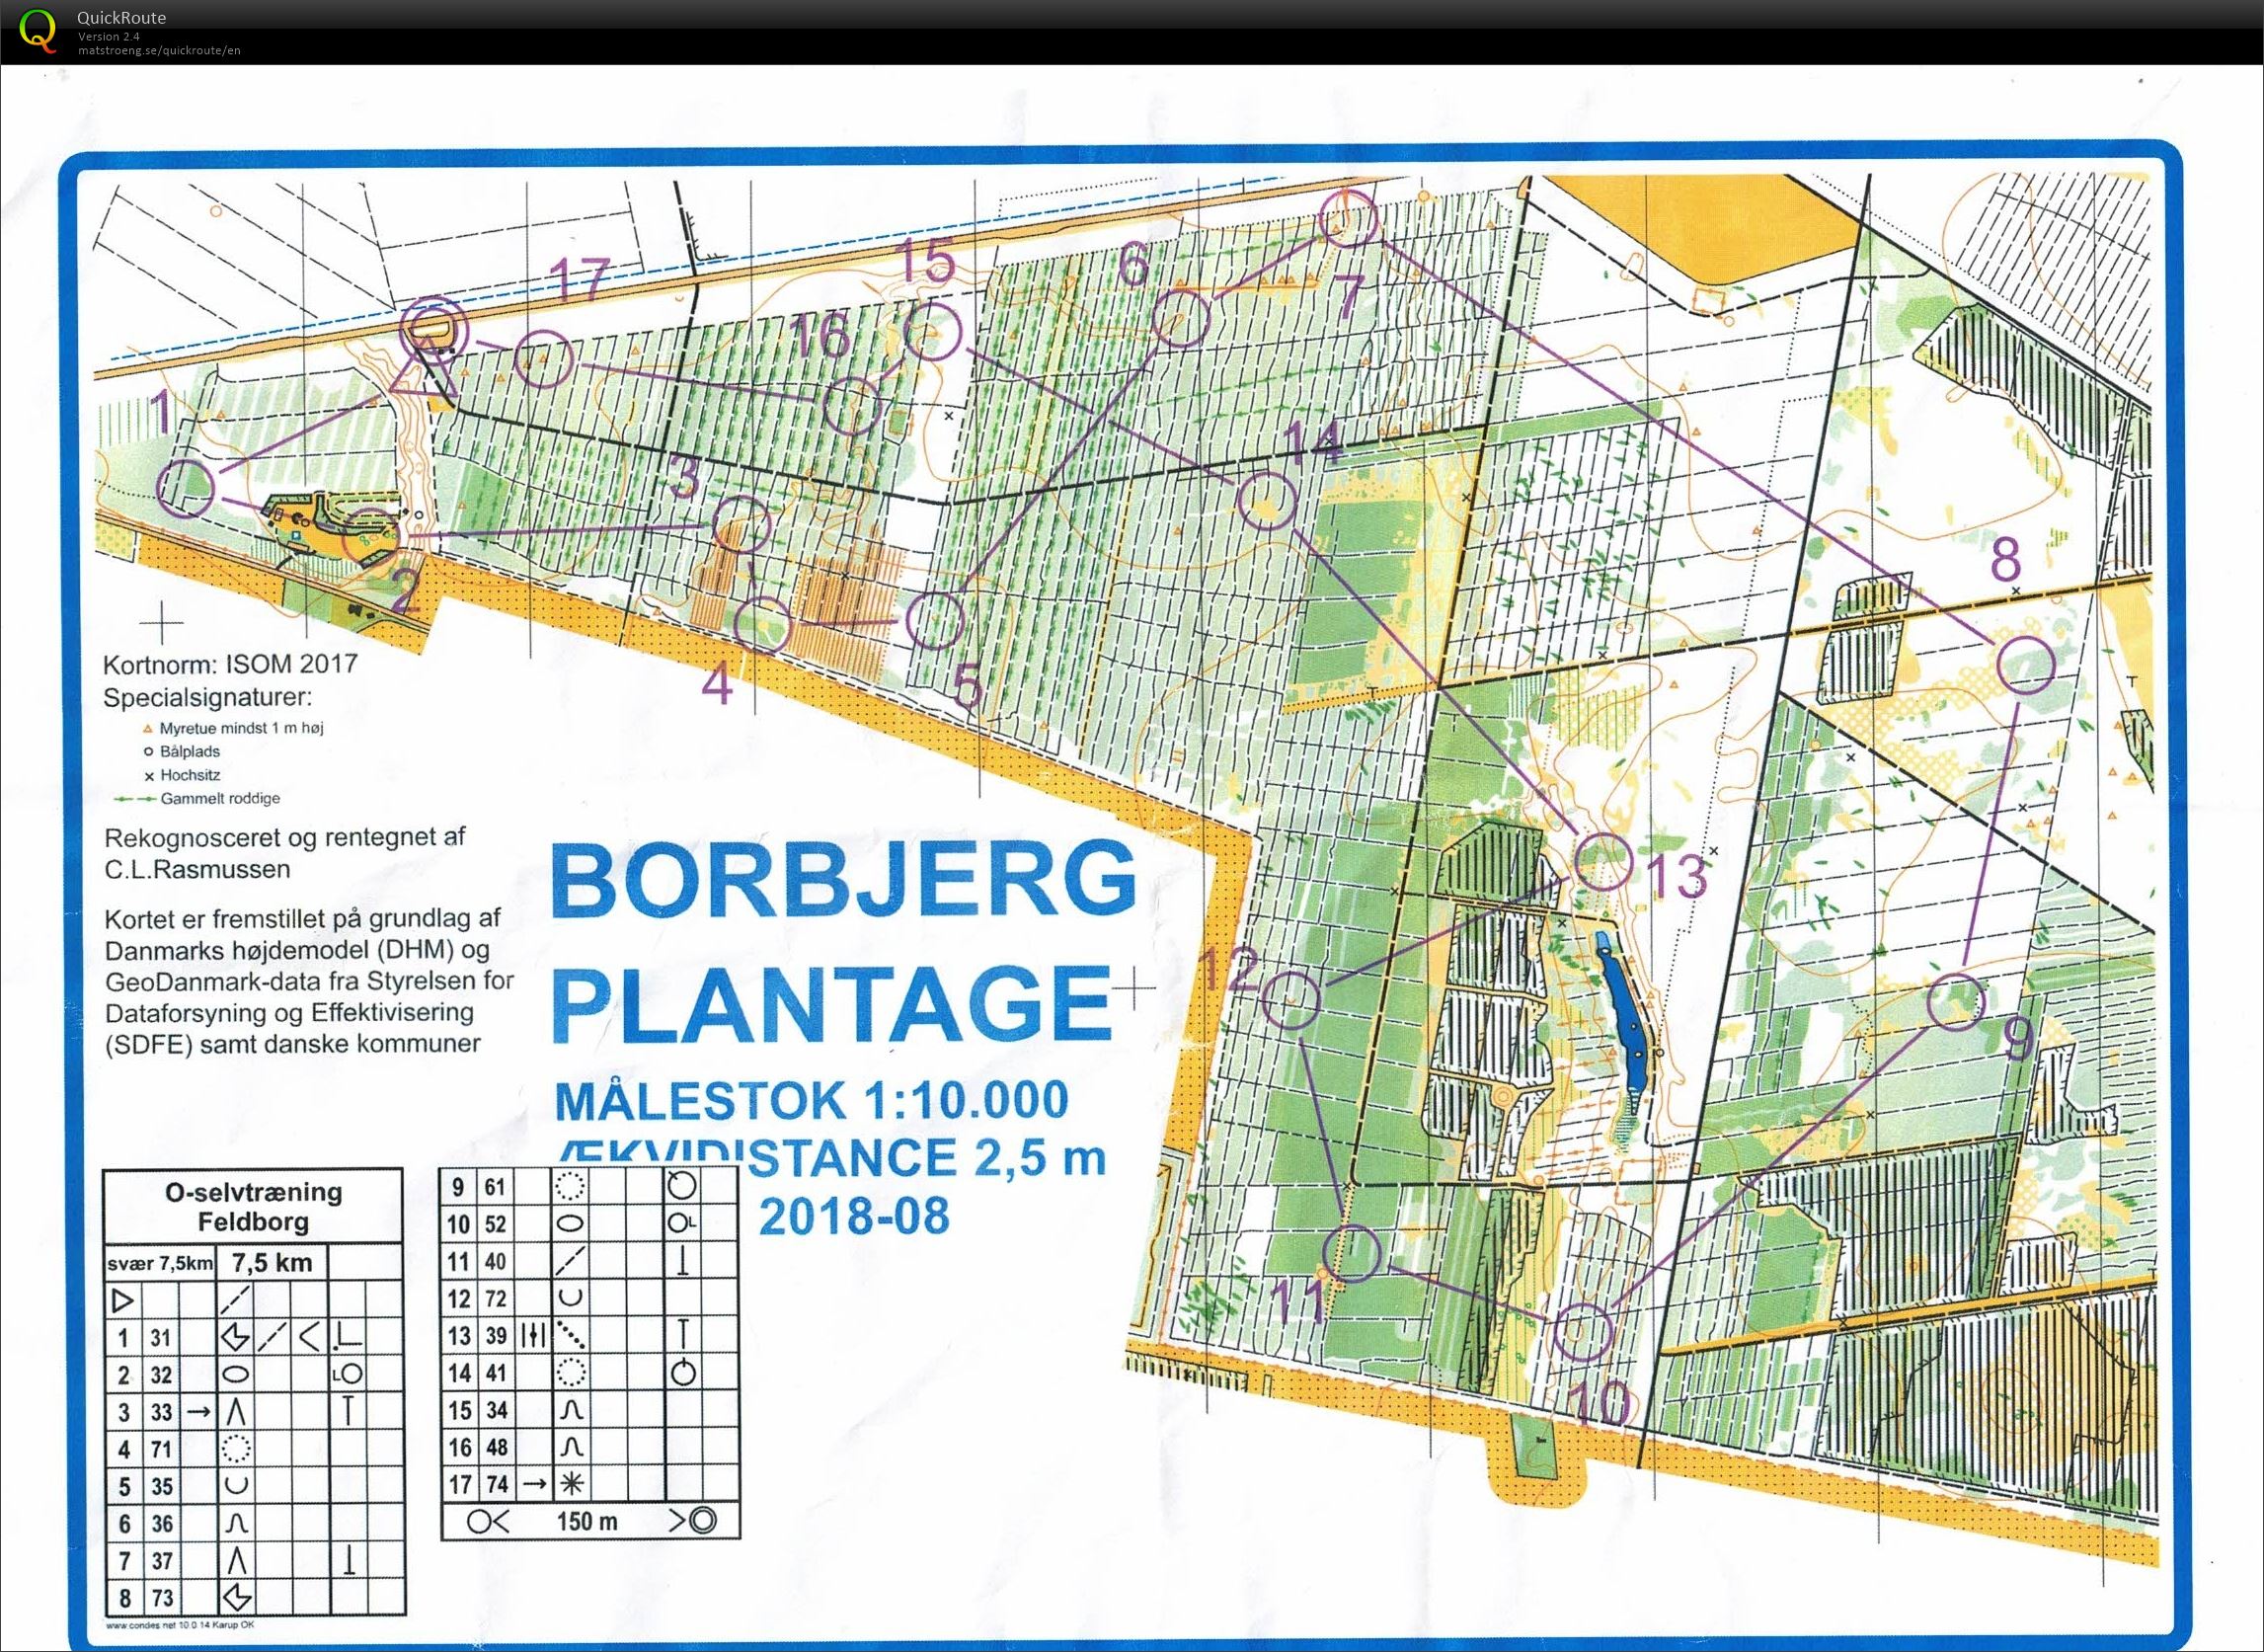 Feldborg nord 7,5 km (30-05-2020)